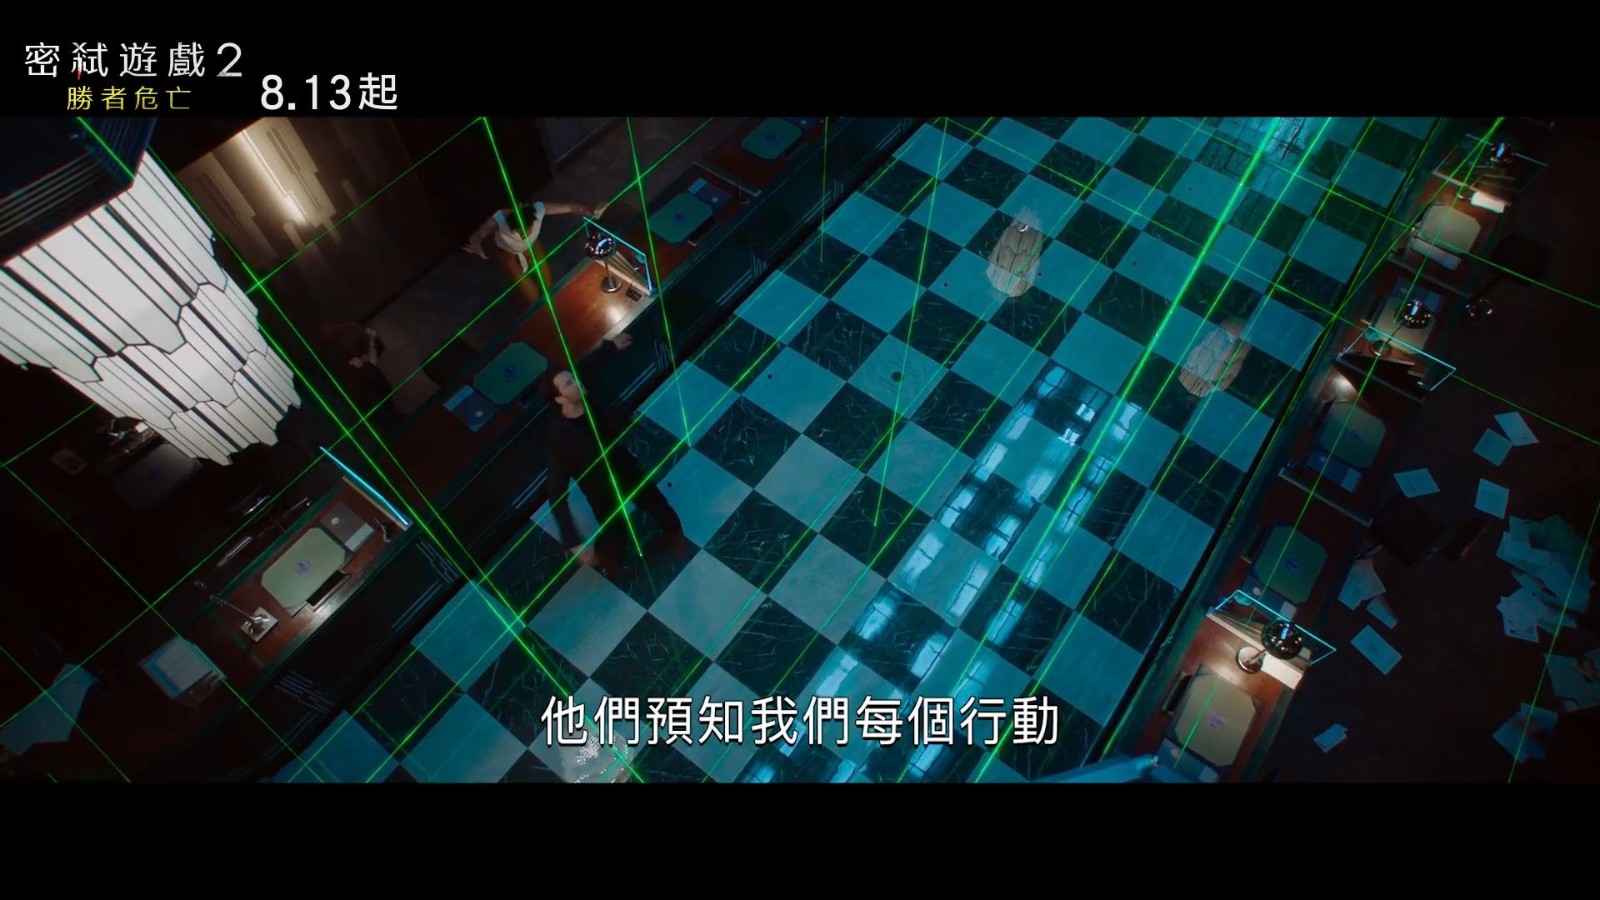 《密室逃生2》新中文预告 挑战更致命危险关卡